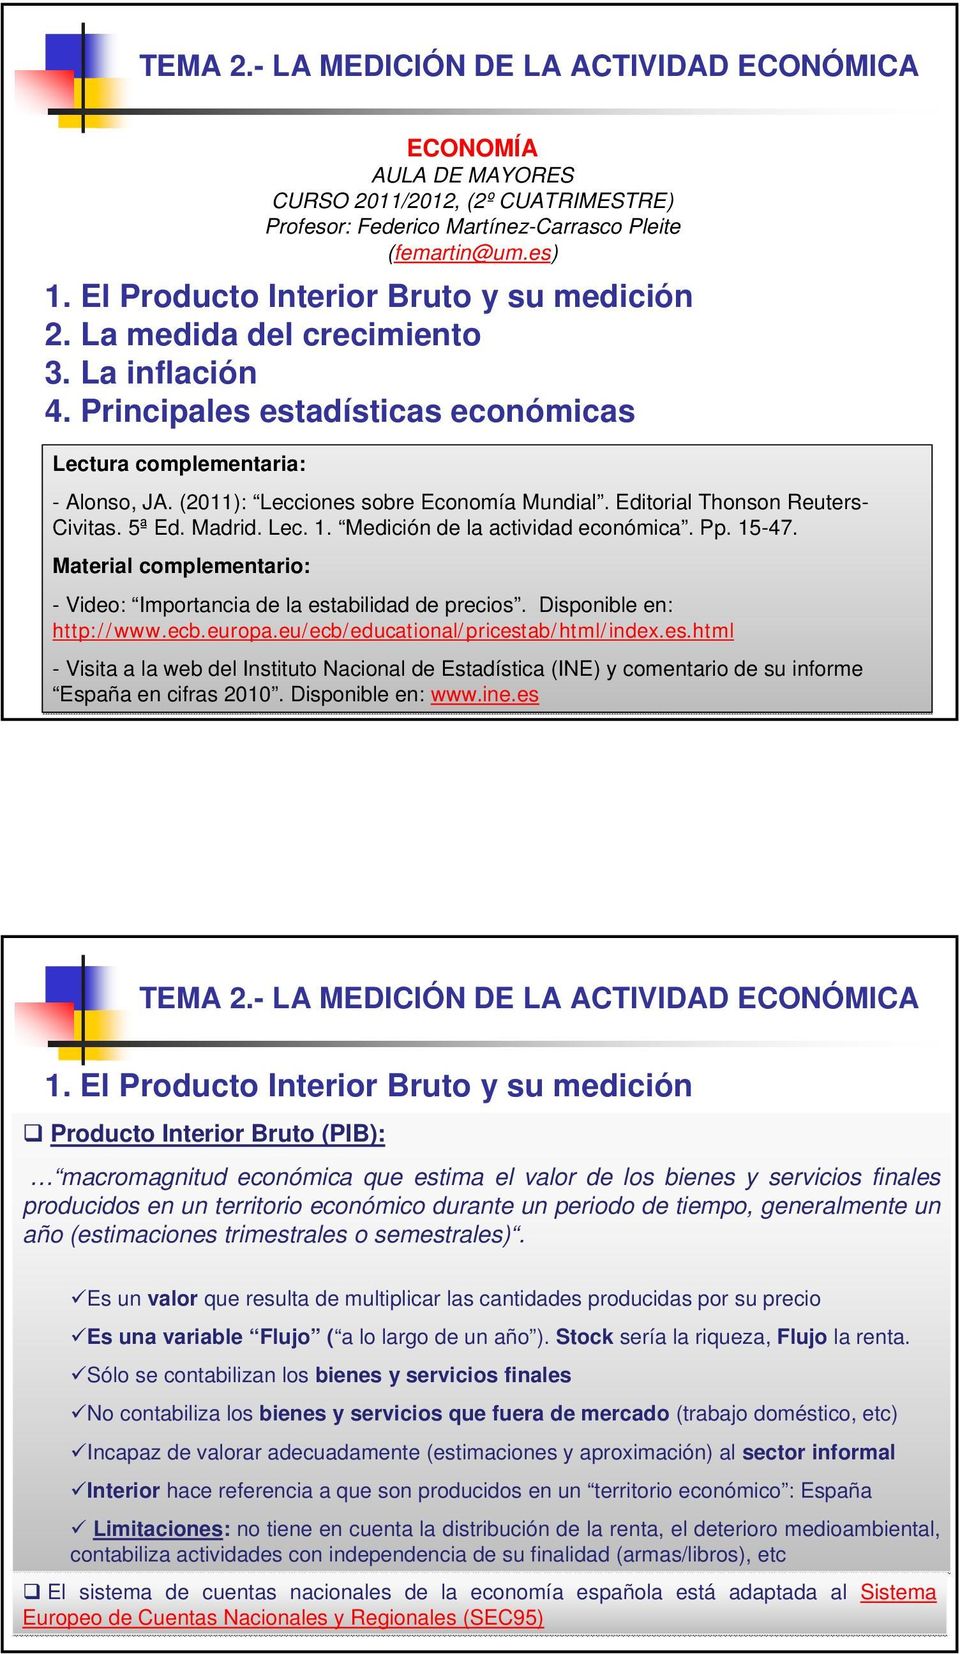 Medición de la actividad económica. Pp. 15-47. Material complementario: - Video: Importancia de la estabilidad de precios. Disponible en: http://www.ecb.europa.eu/ecb/educational/pricestab/html/index.